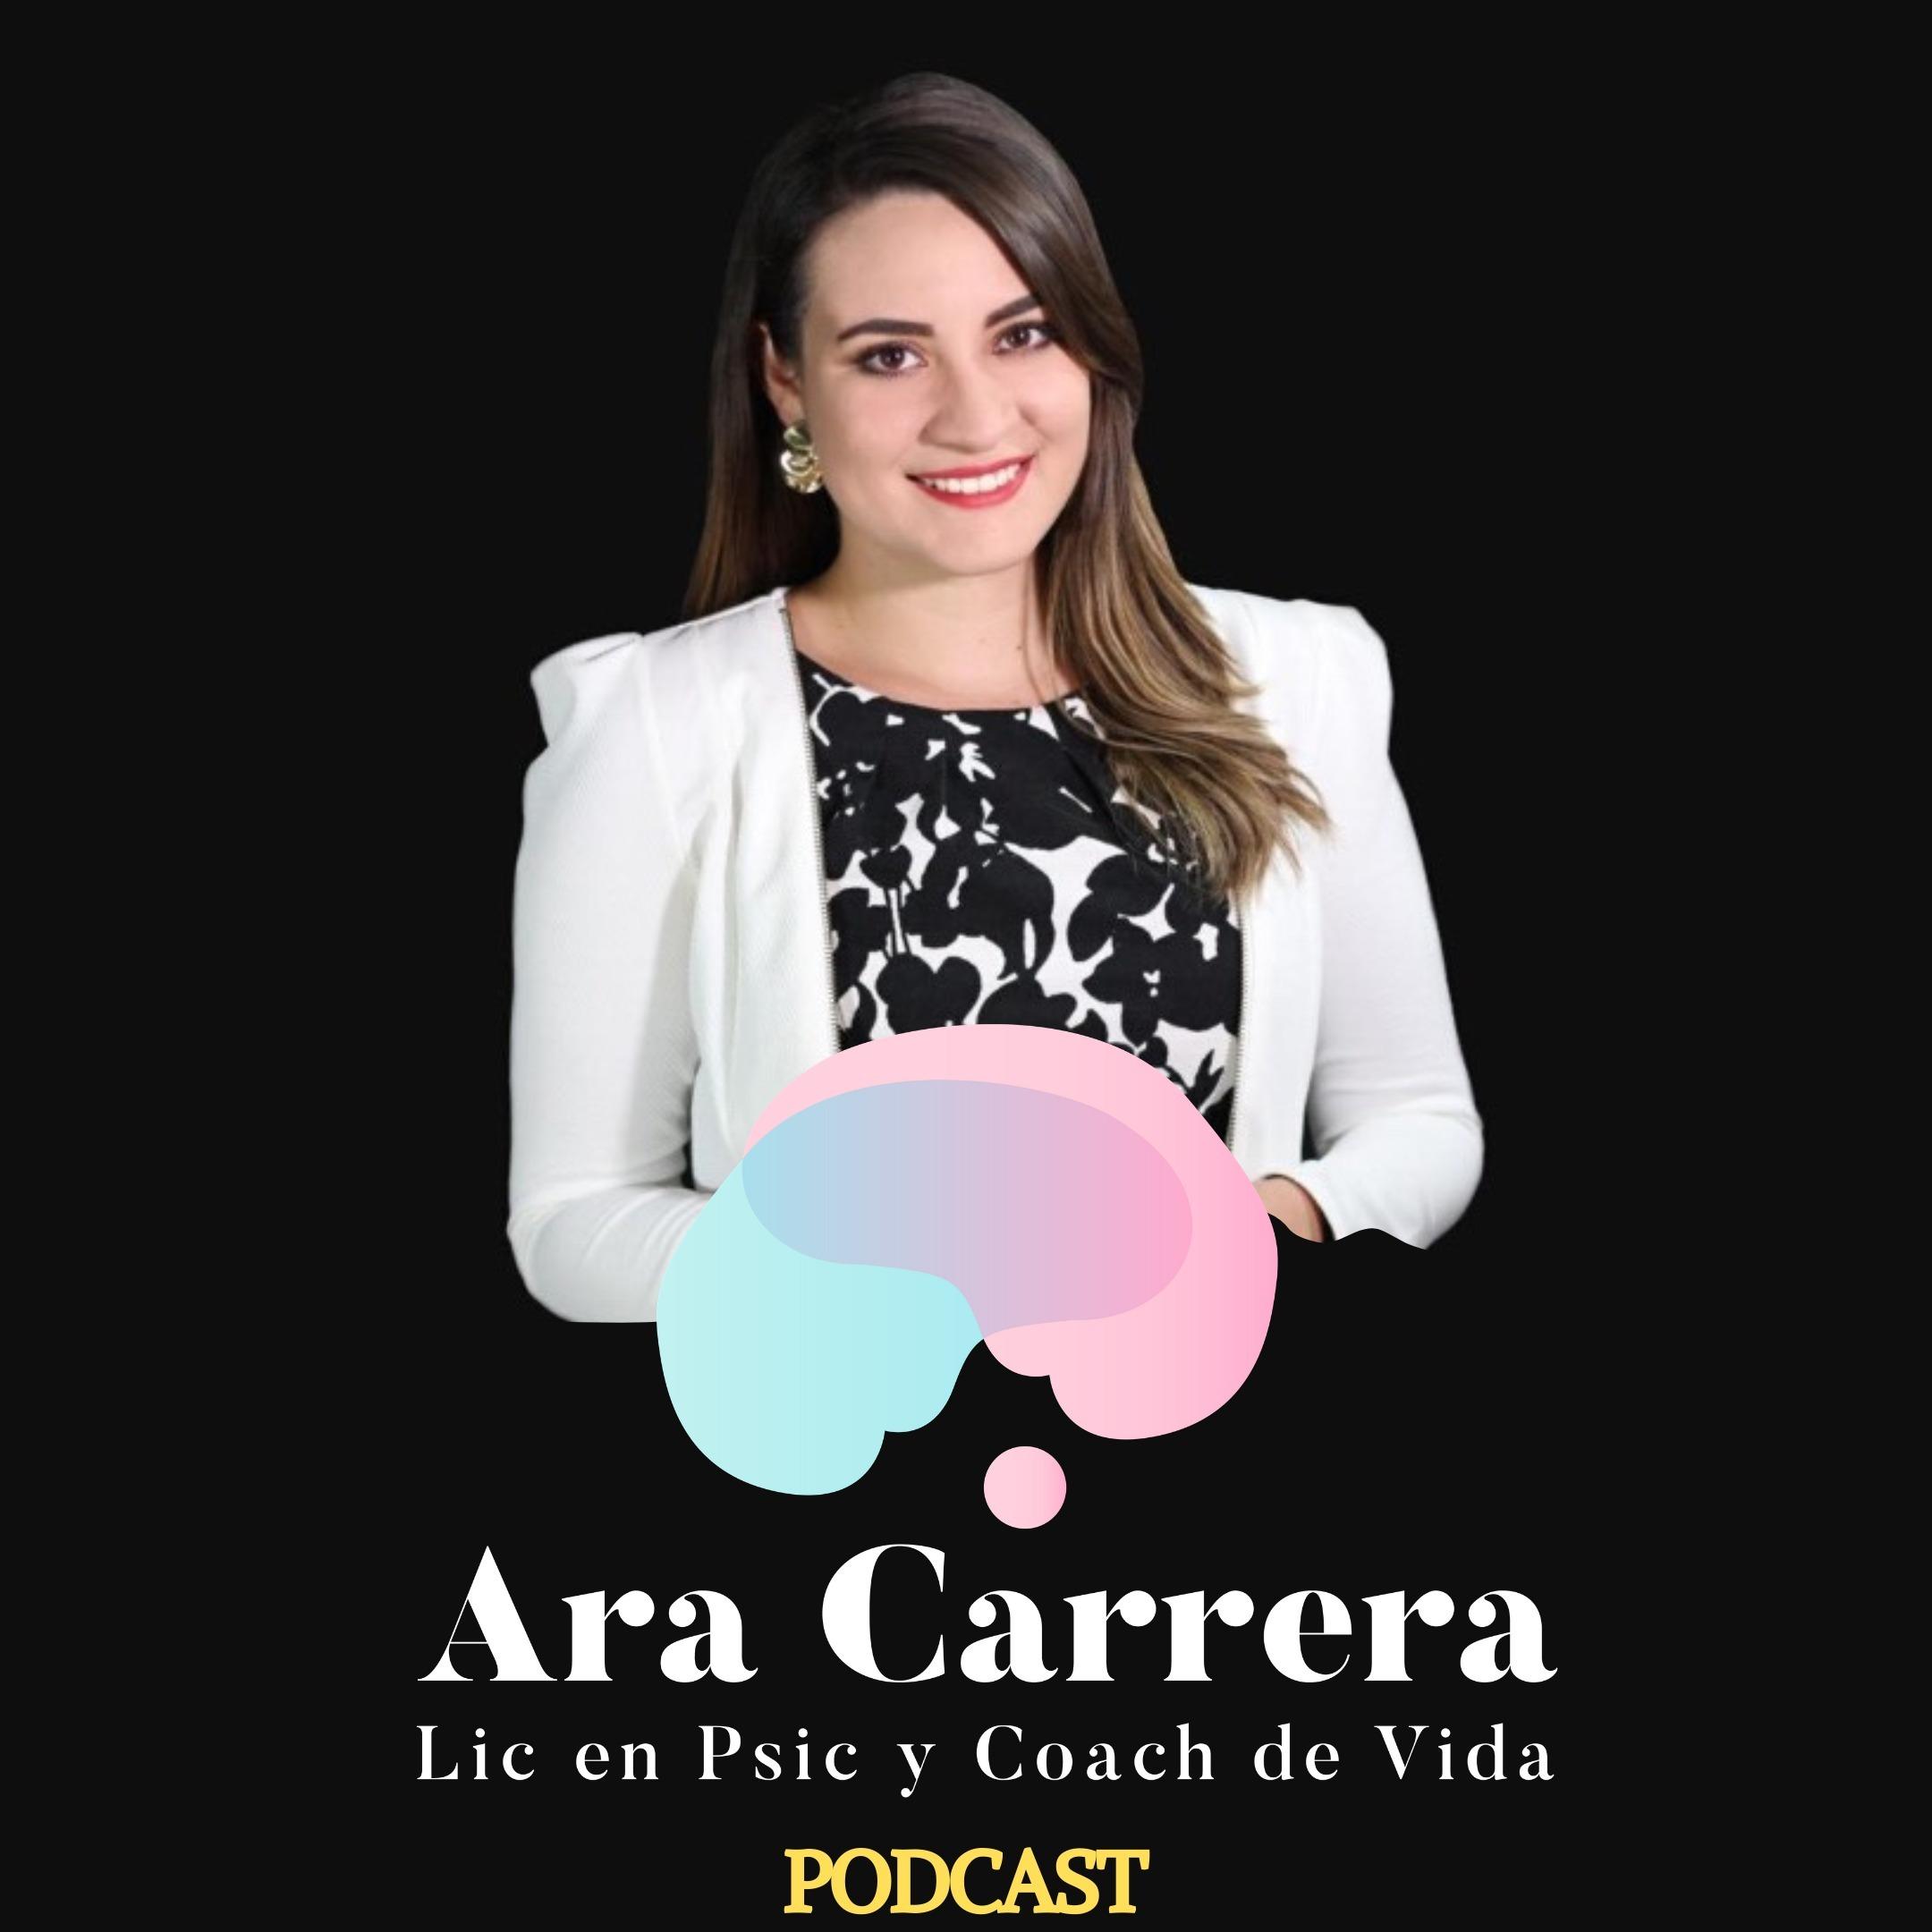 Inspira tus sueños con Ara Carrera